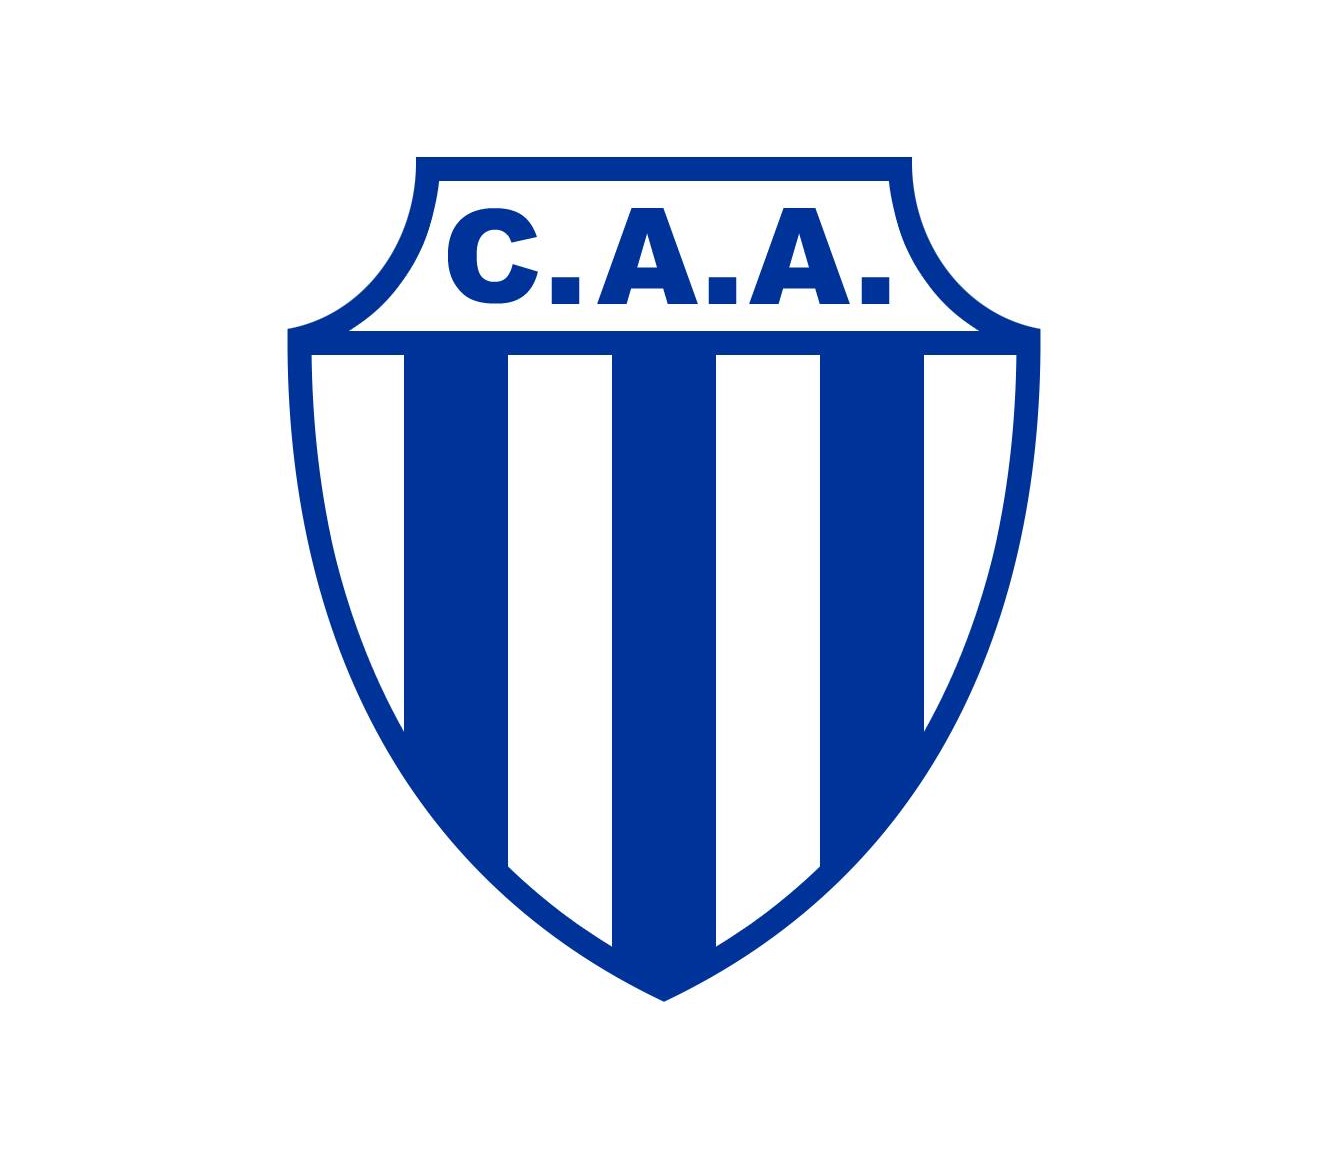 Fútbol en América: Club Atlético LOS ANDES